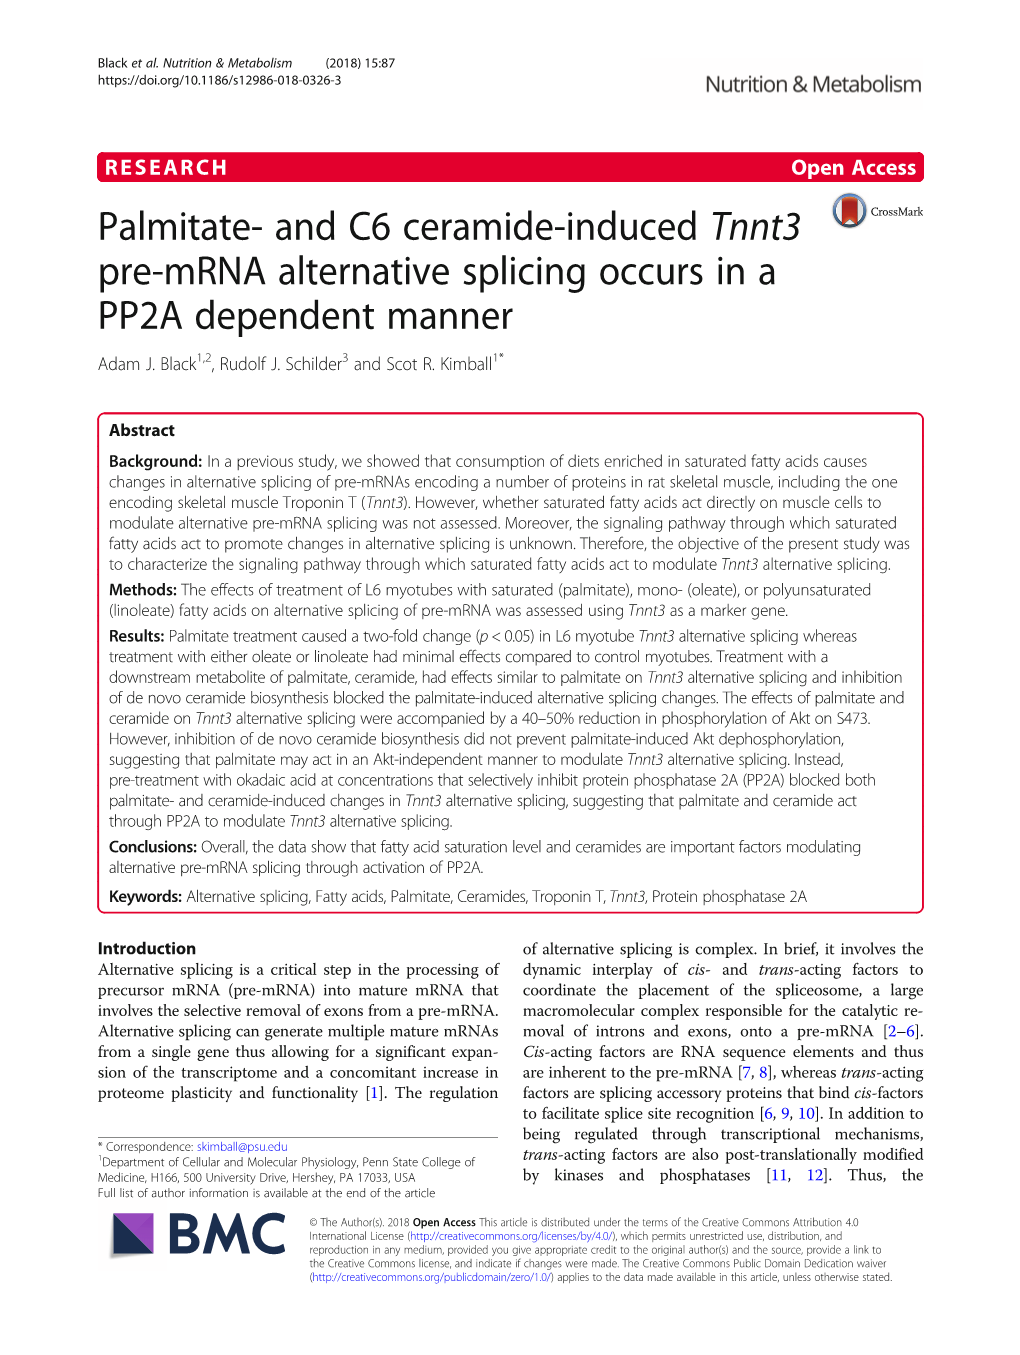 Palmitate- and C6 Ceramide-Induced Tnnt3 Pre-Mrna Alternative Splicing Occurs in a PP2A Dependent Manner Adam J